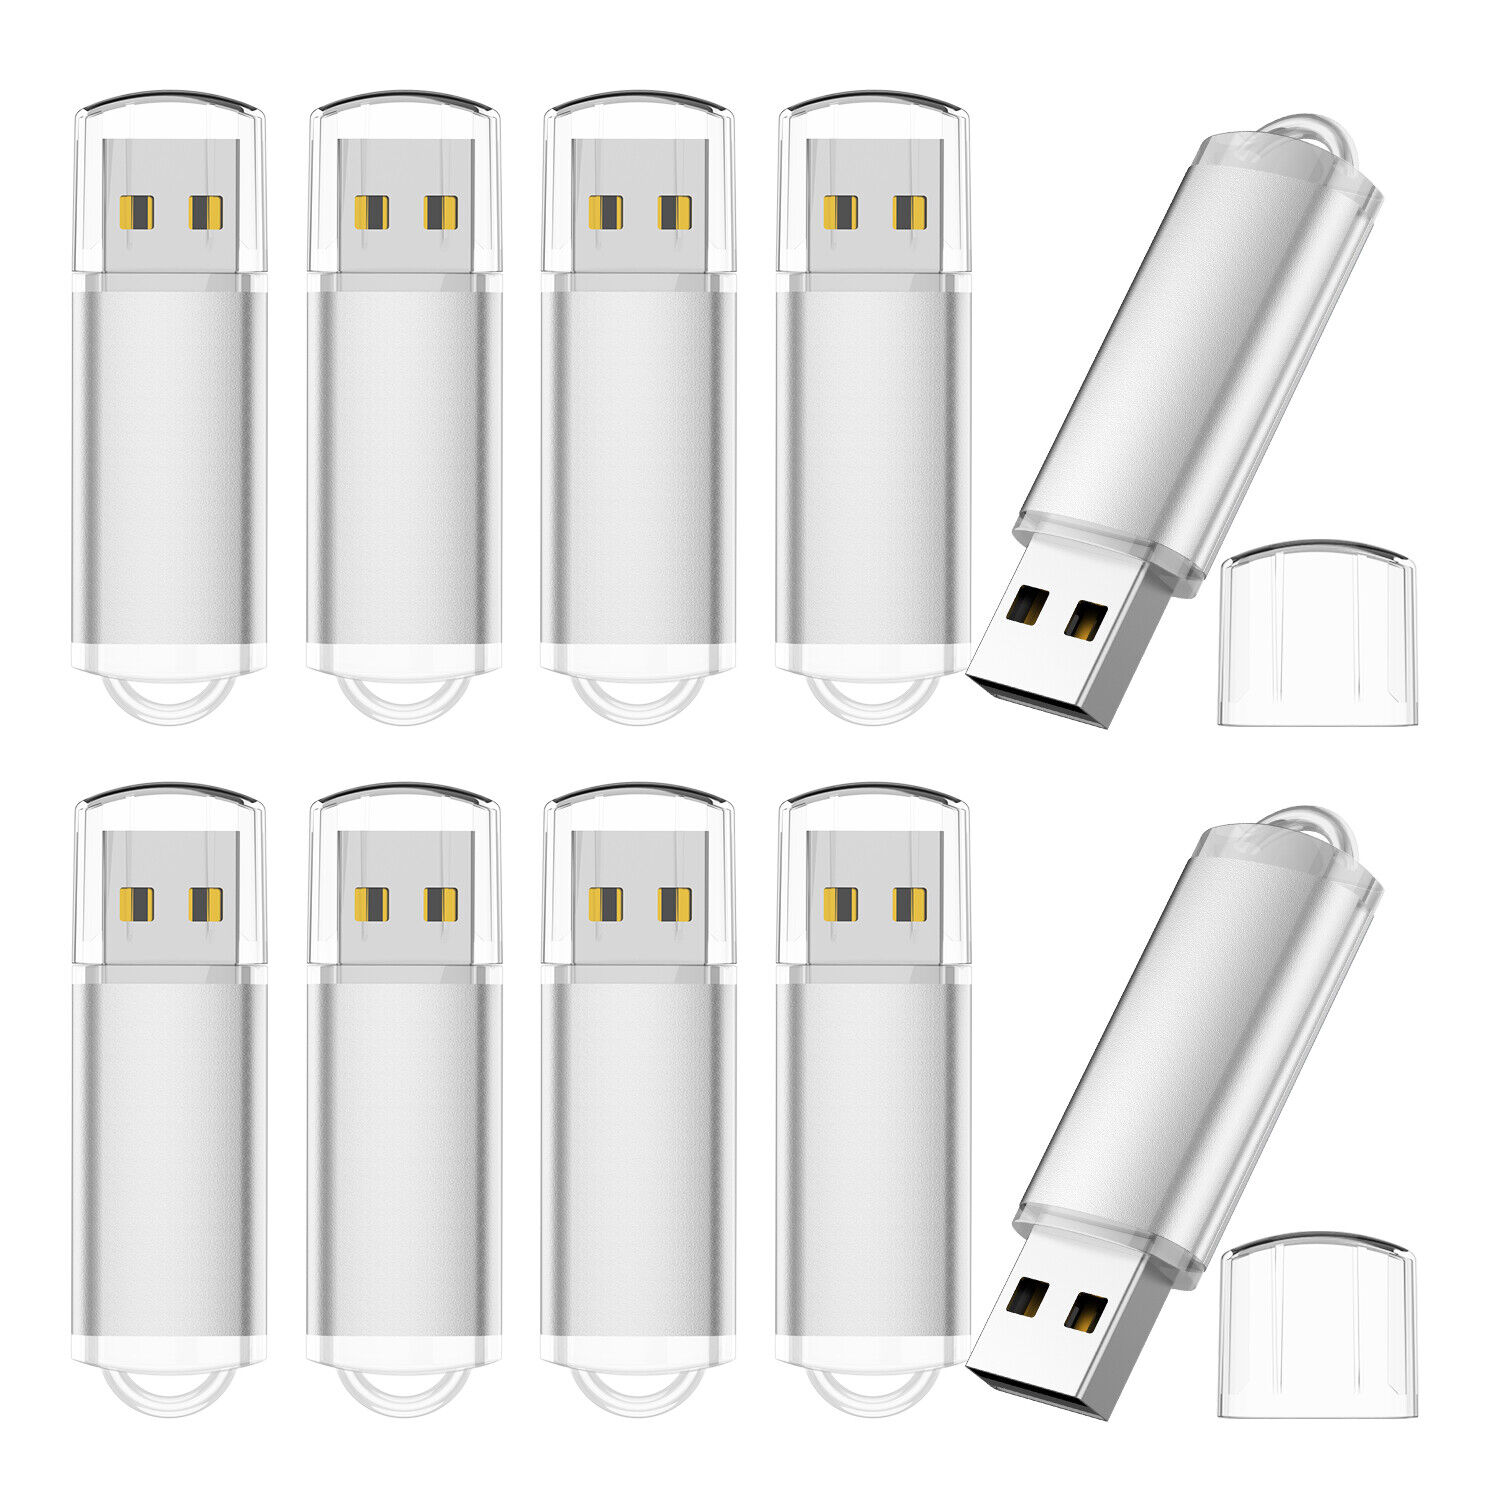 Silver 100pcs 4GB 100PCS Metal Rectangle USB Flash Drives Memory Sticks PenDrive